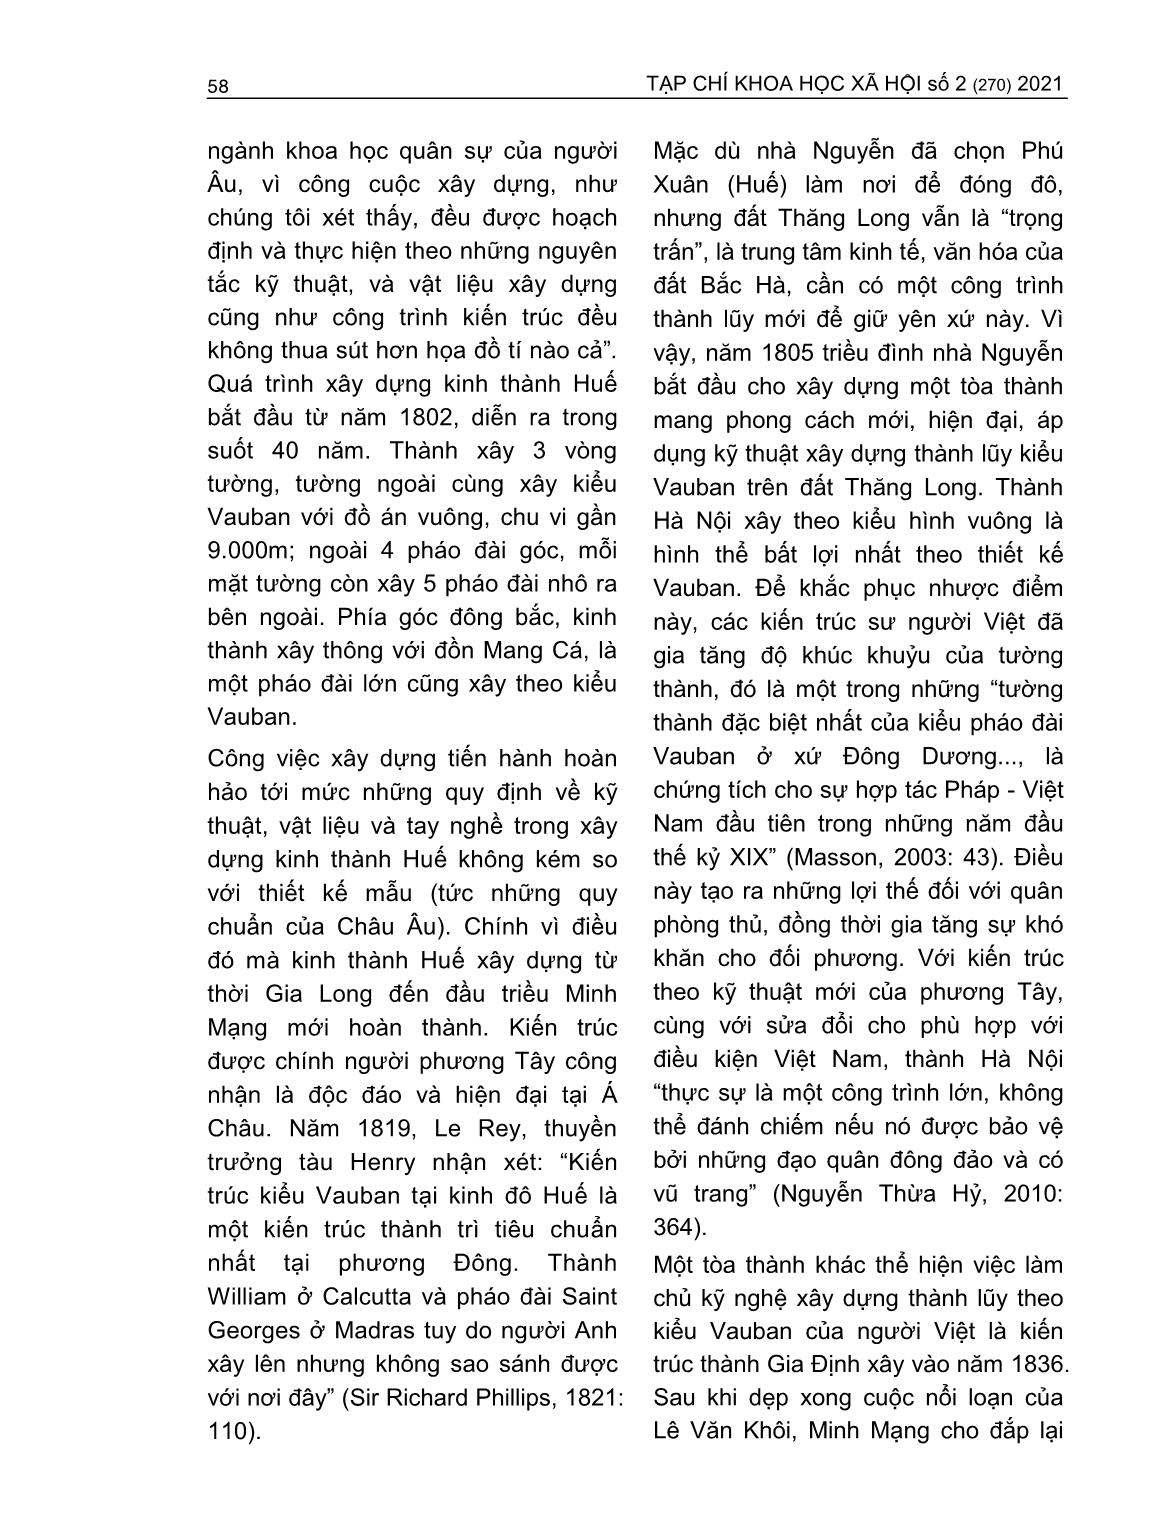 Việc tiếp thu, áp dụng kỹ thuật quân sự phương Tây của triều Nguyễn (1802-1858) trang 9